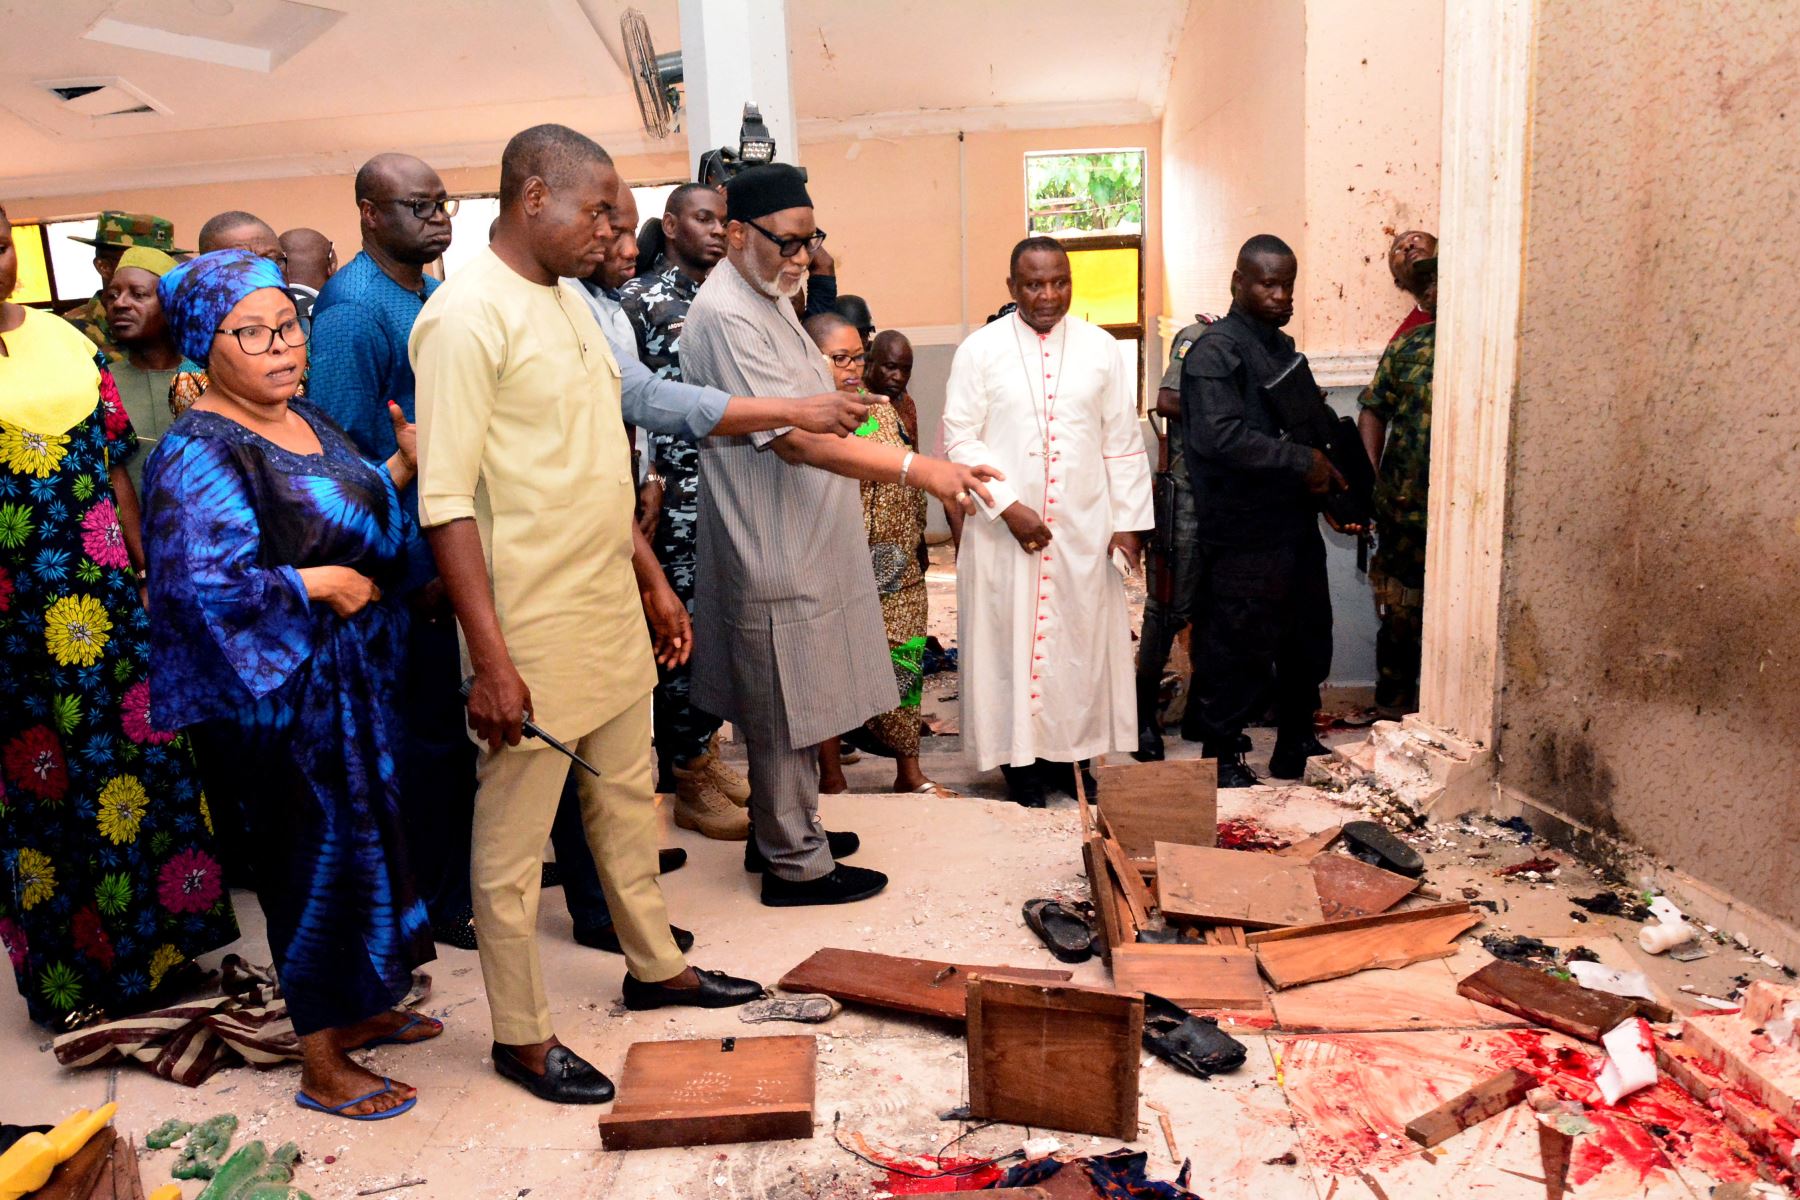 Más de 50 personas murieron en el ataque a una iglesia el domingo en Nigeria